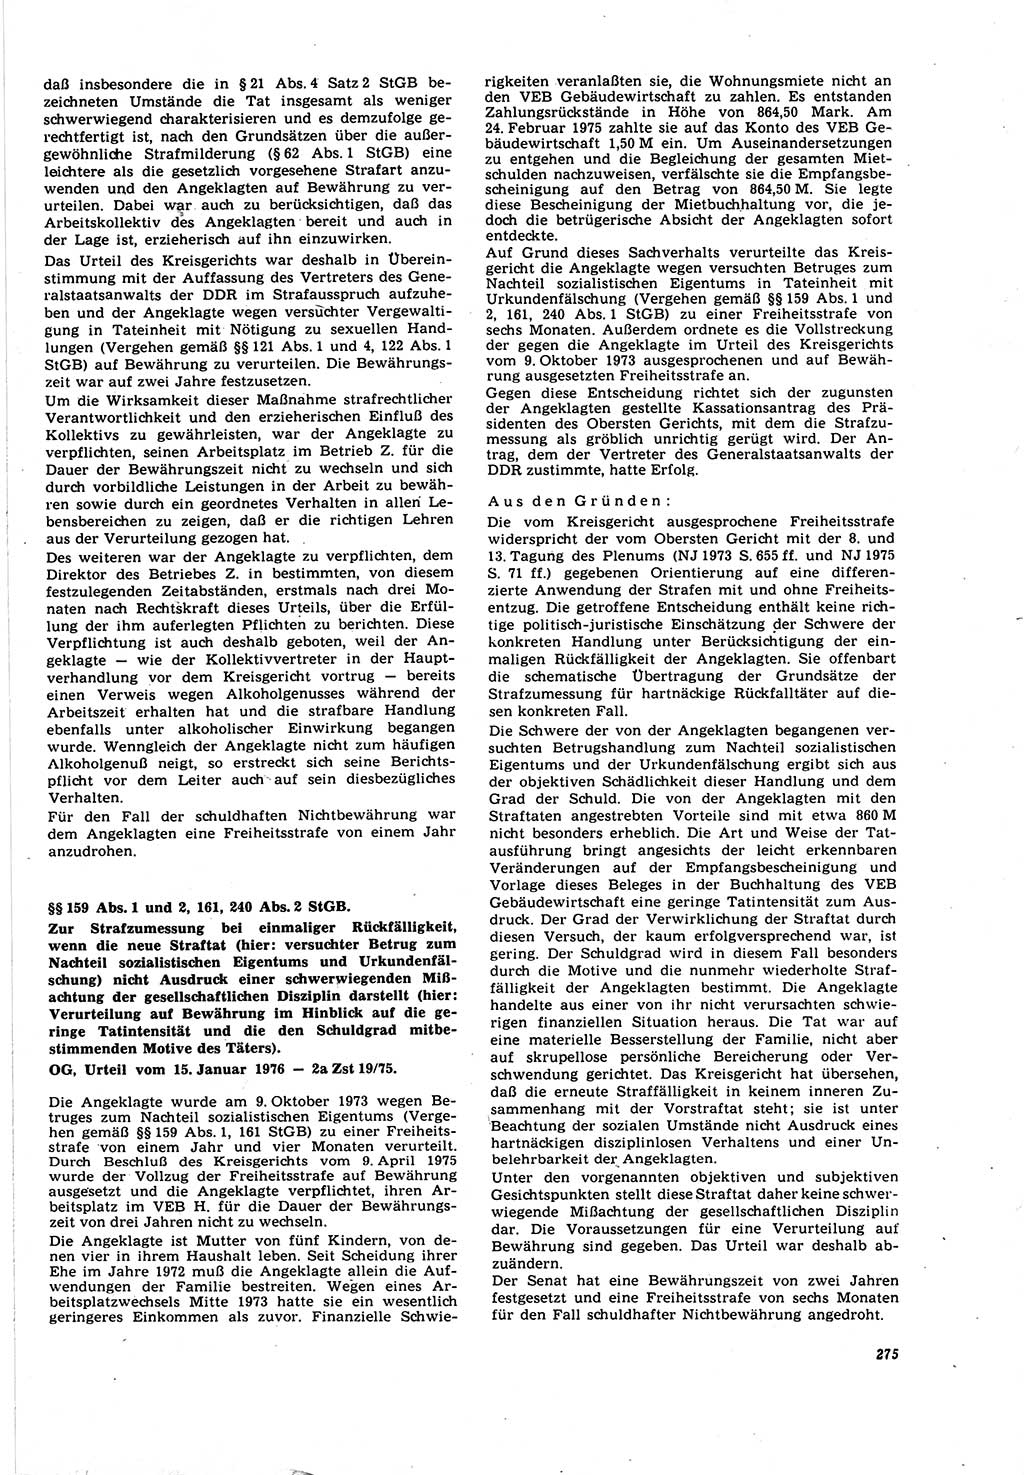 Neue Justiz (NJ), Zeitschrift für Recht und Rechtswissenschaft [Deutsche Demokratische Republik (DDR)], 30. Jahrgang 1976, Seite 275 (NJ DDR 1976, S. 275)